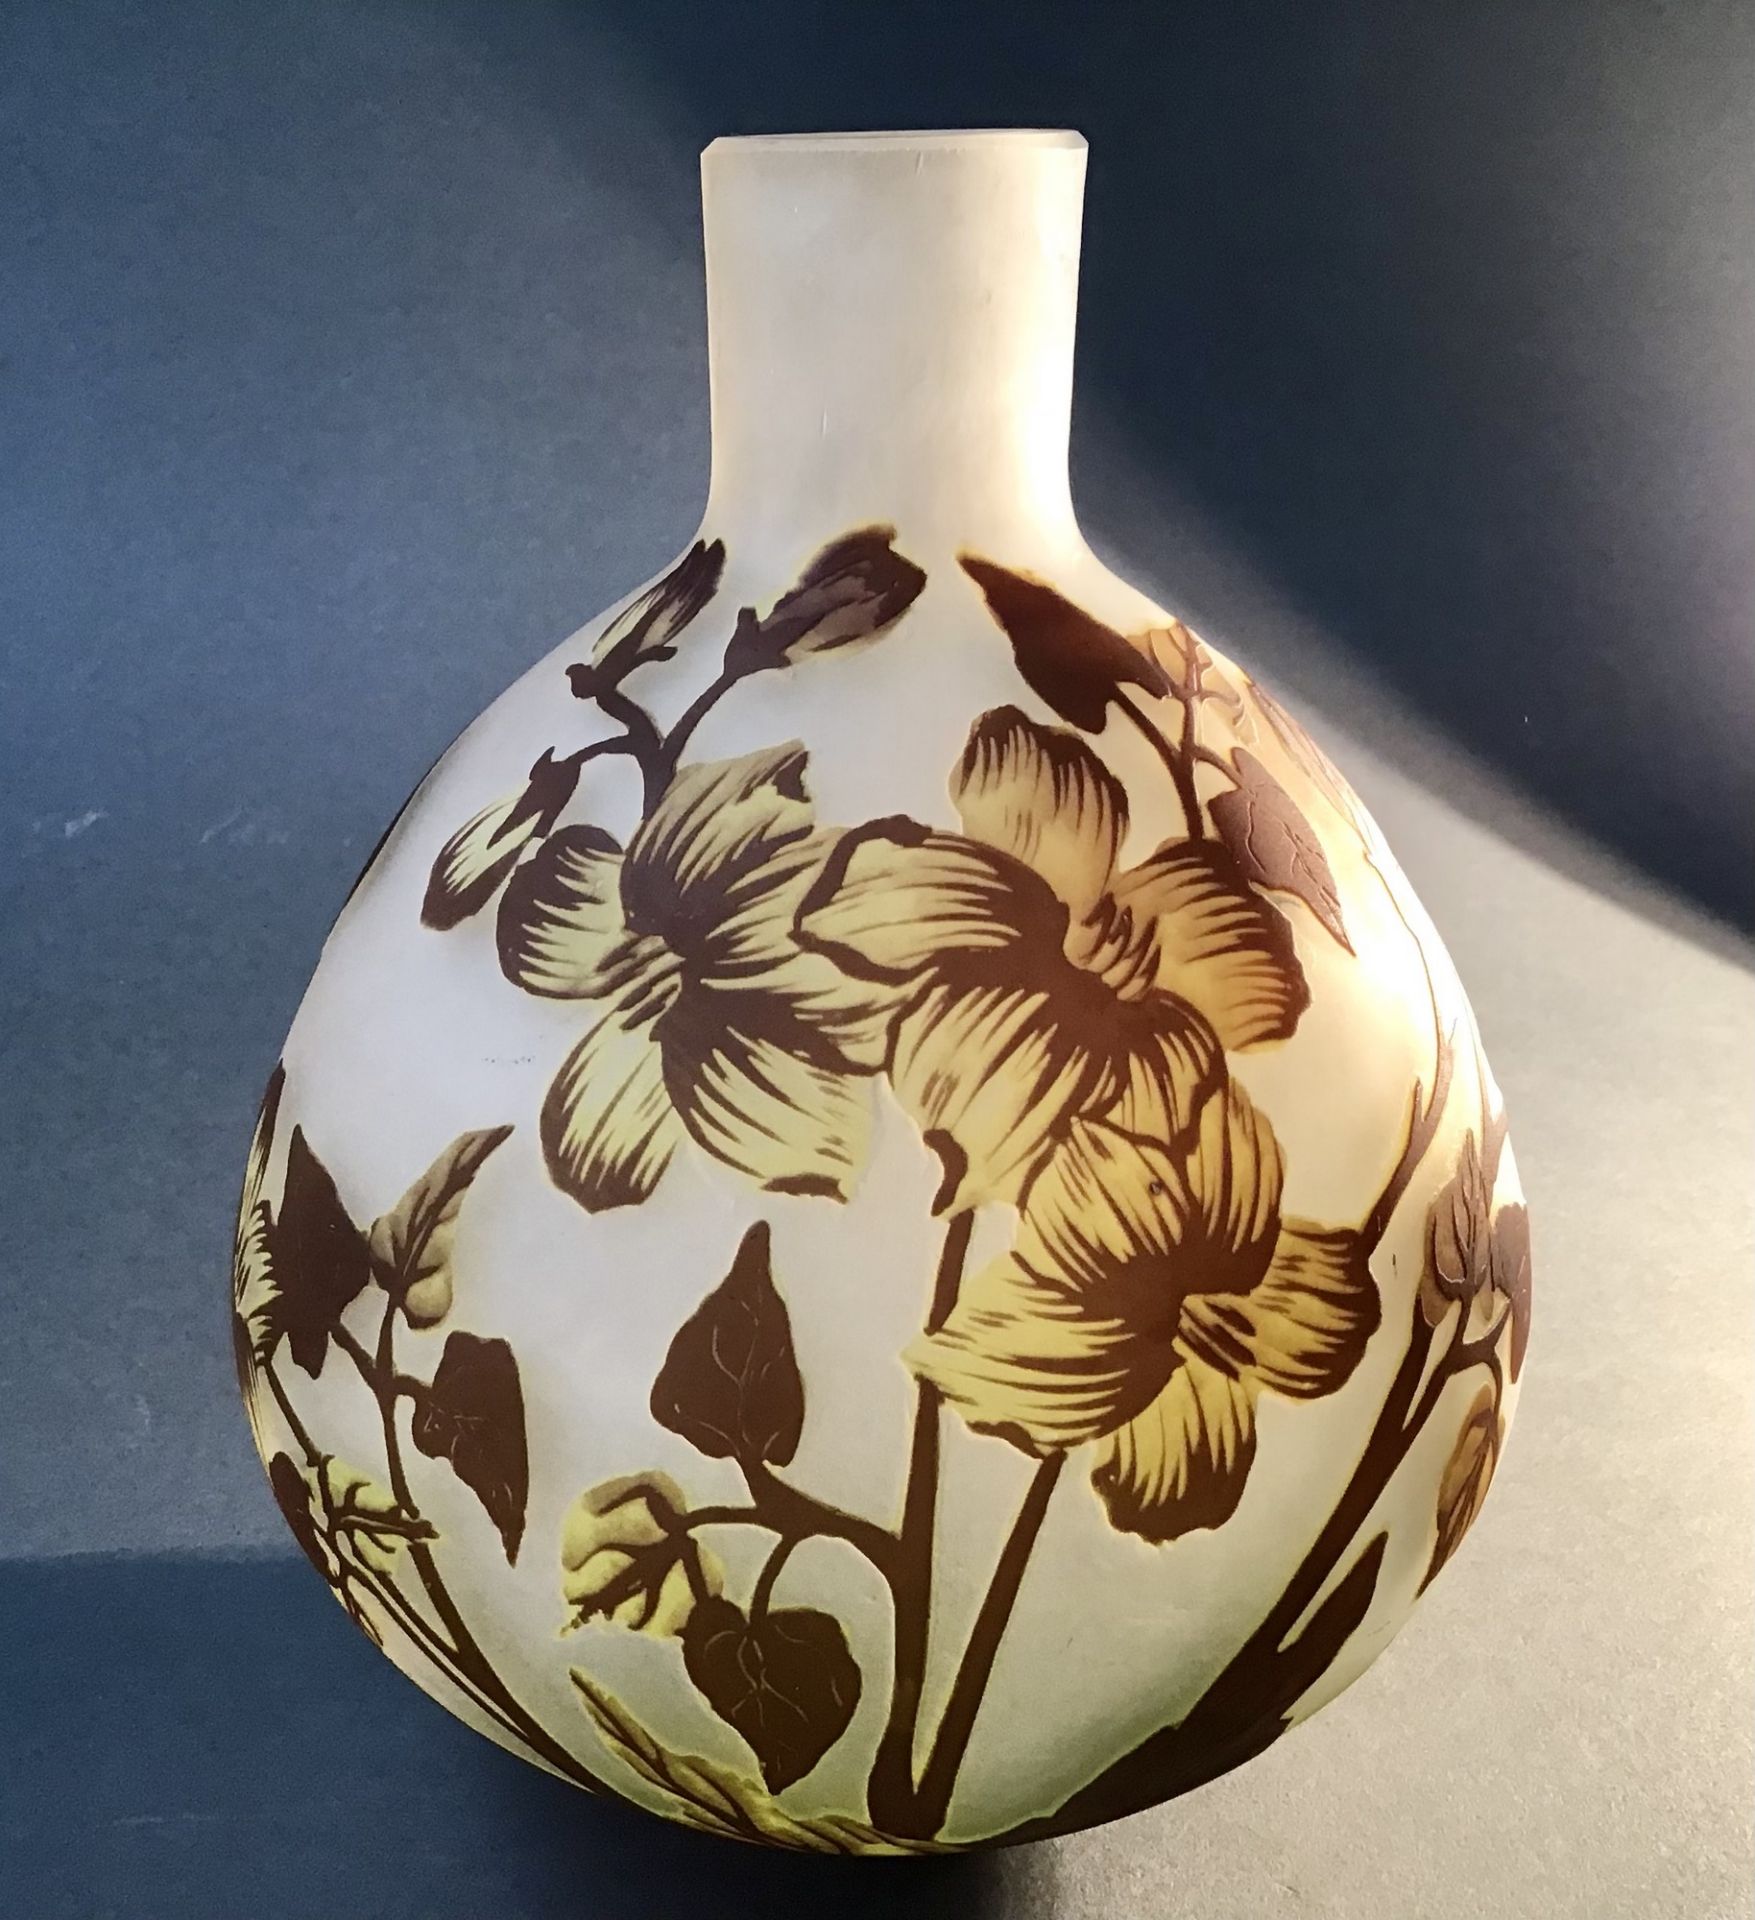 Jugendstilätzglas- Vase aus Nancy, um 1900, farbloses Glas, formgeblasen, gelb und braun opal